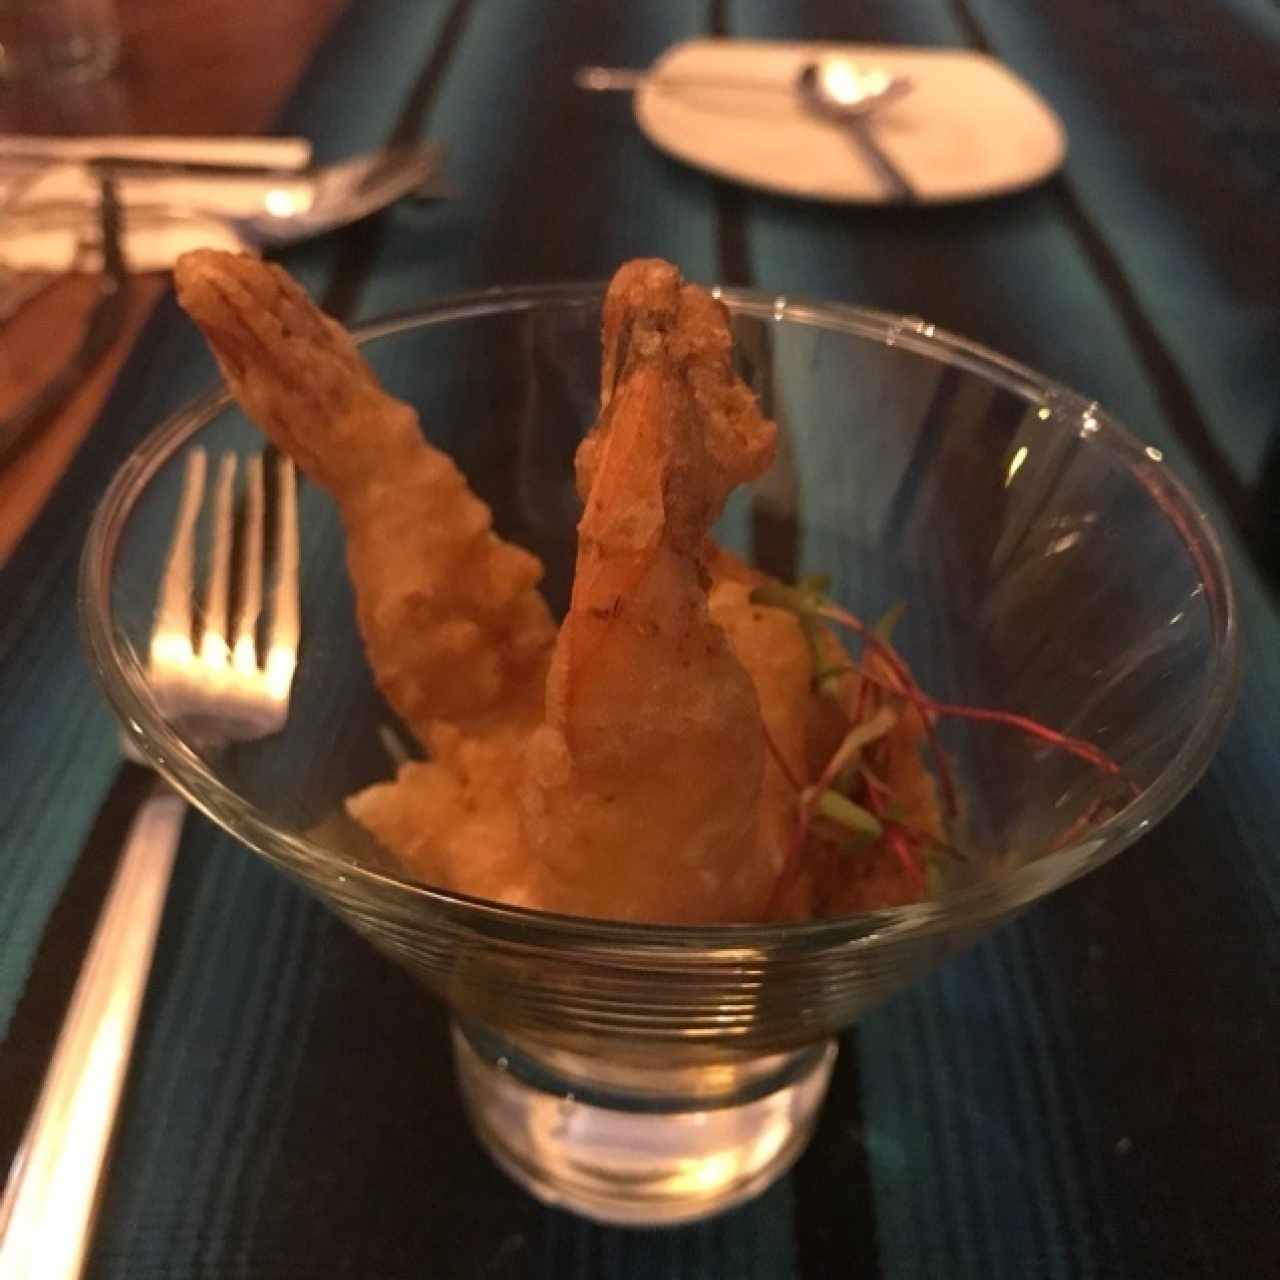 camaron tempura sobre mouse picante